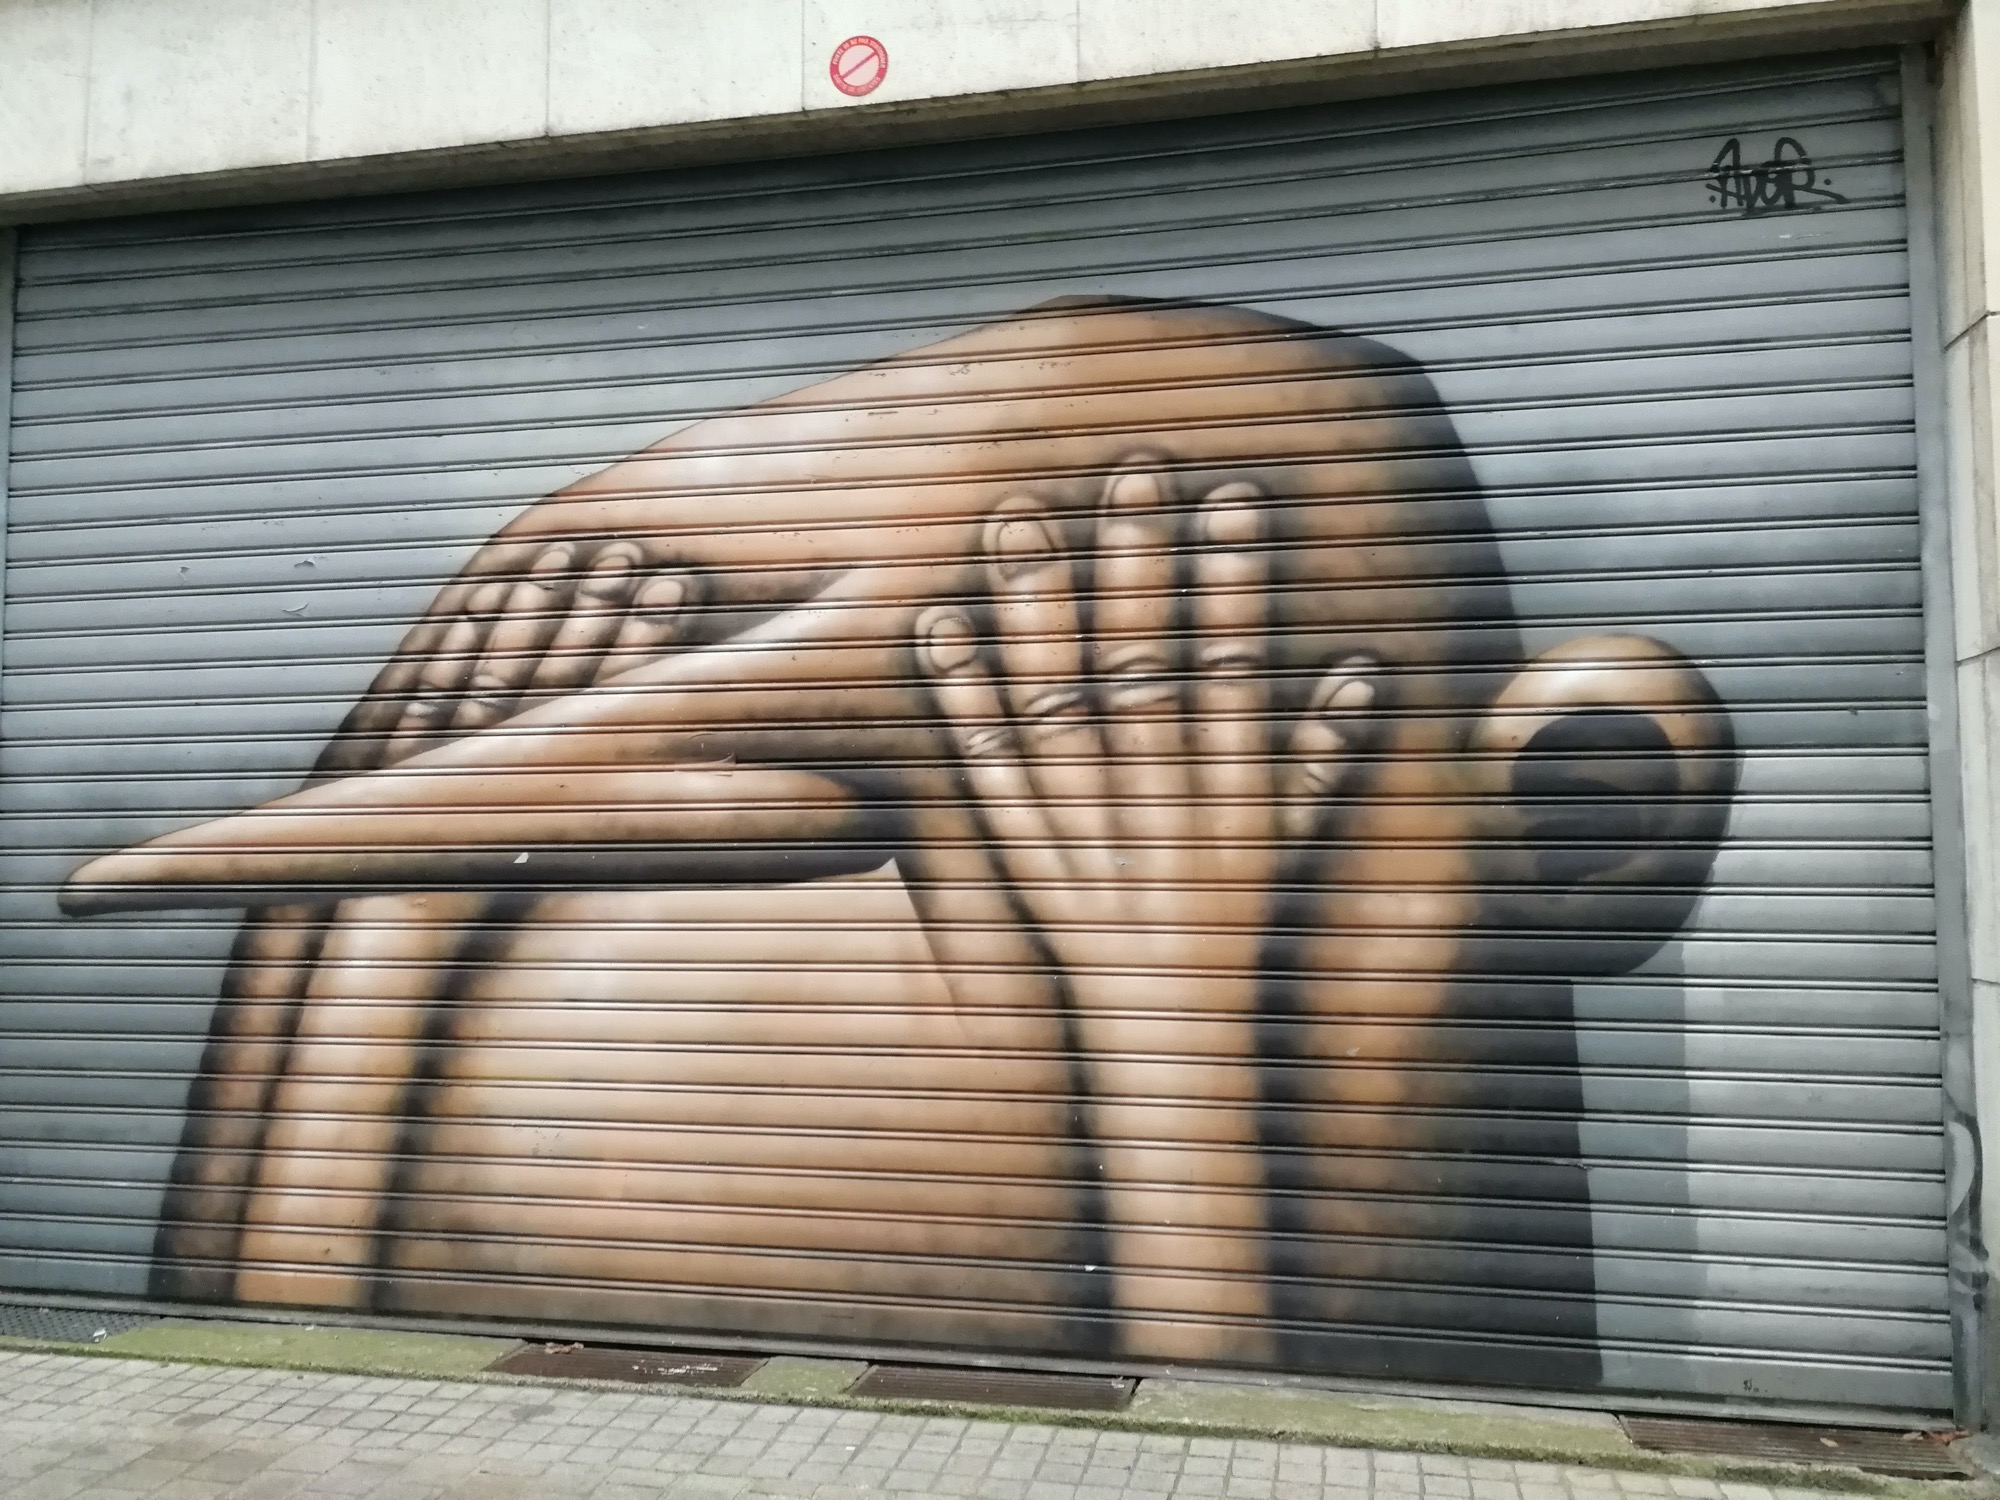 Graffiti 589  de Ador capturé par Rabot à Nantes France